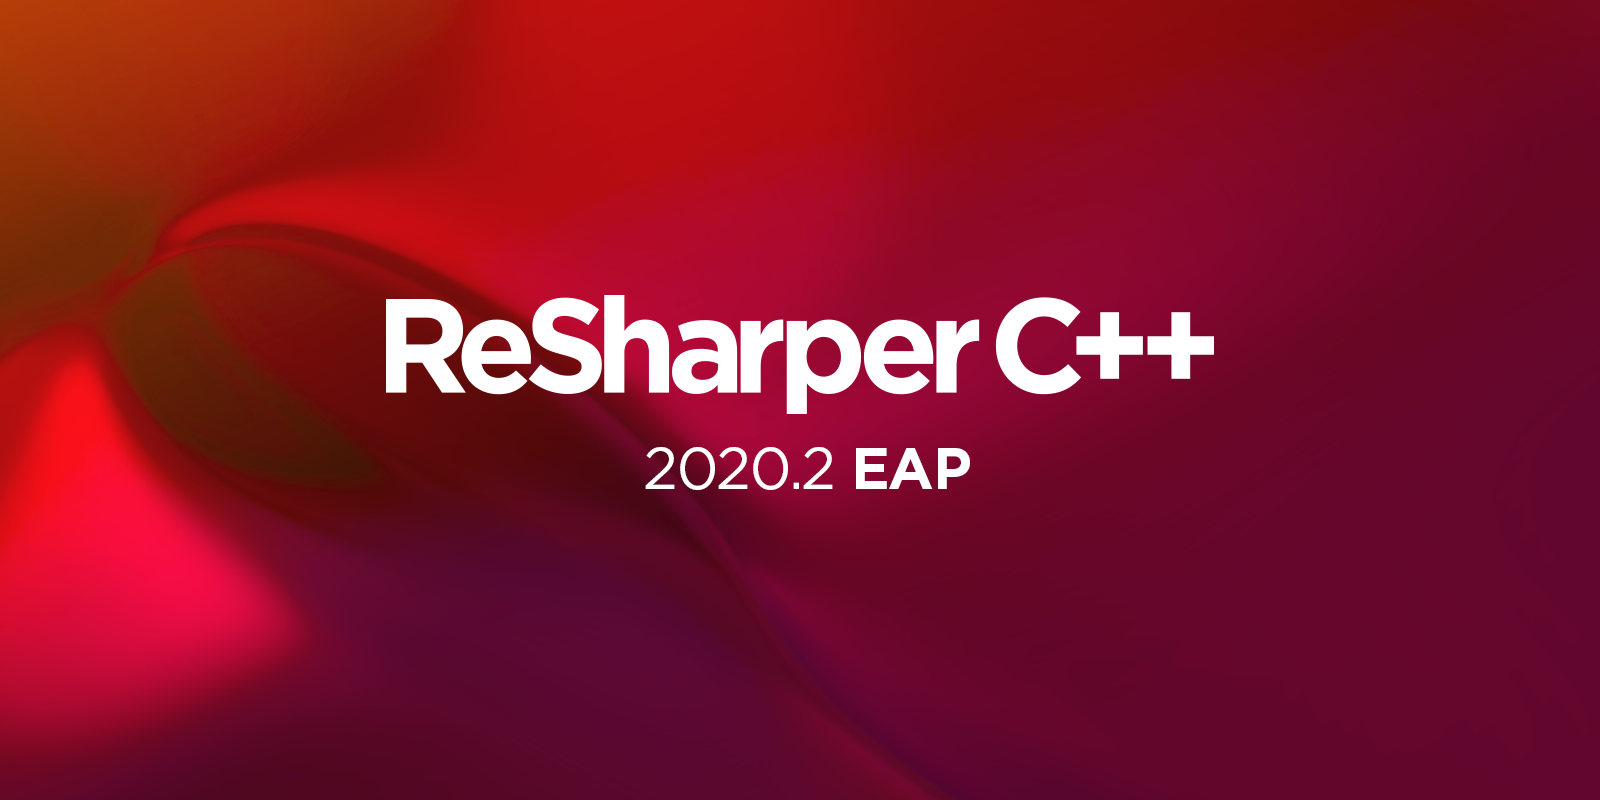 ReSharper C++ 2020.2 EAP